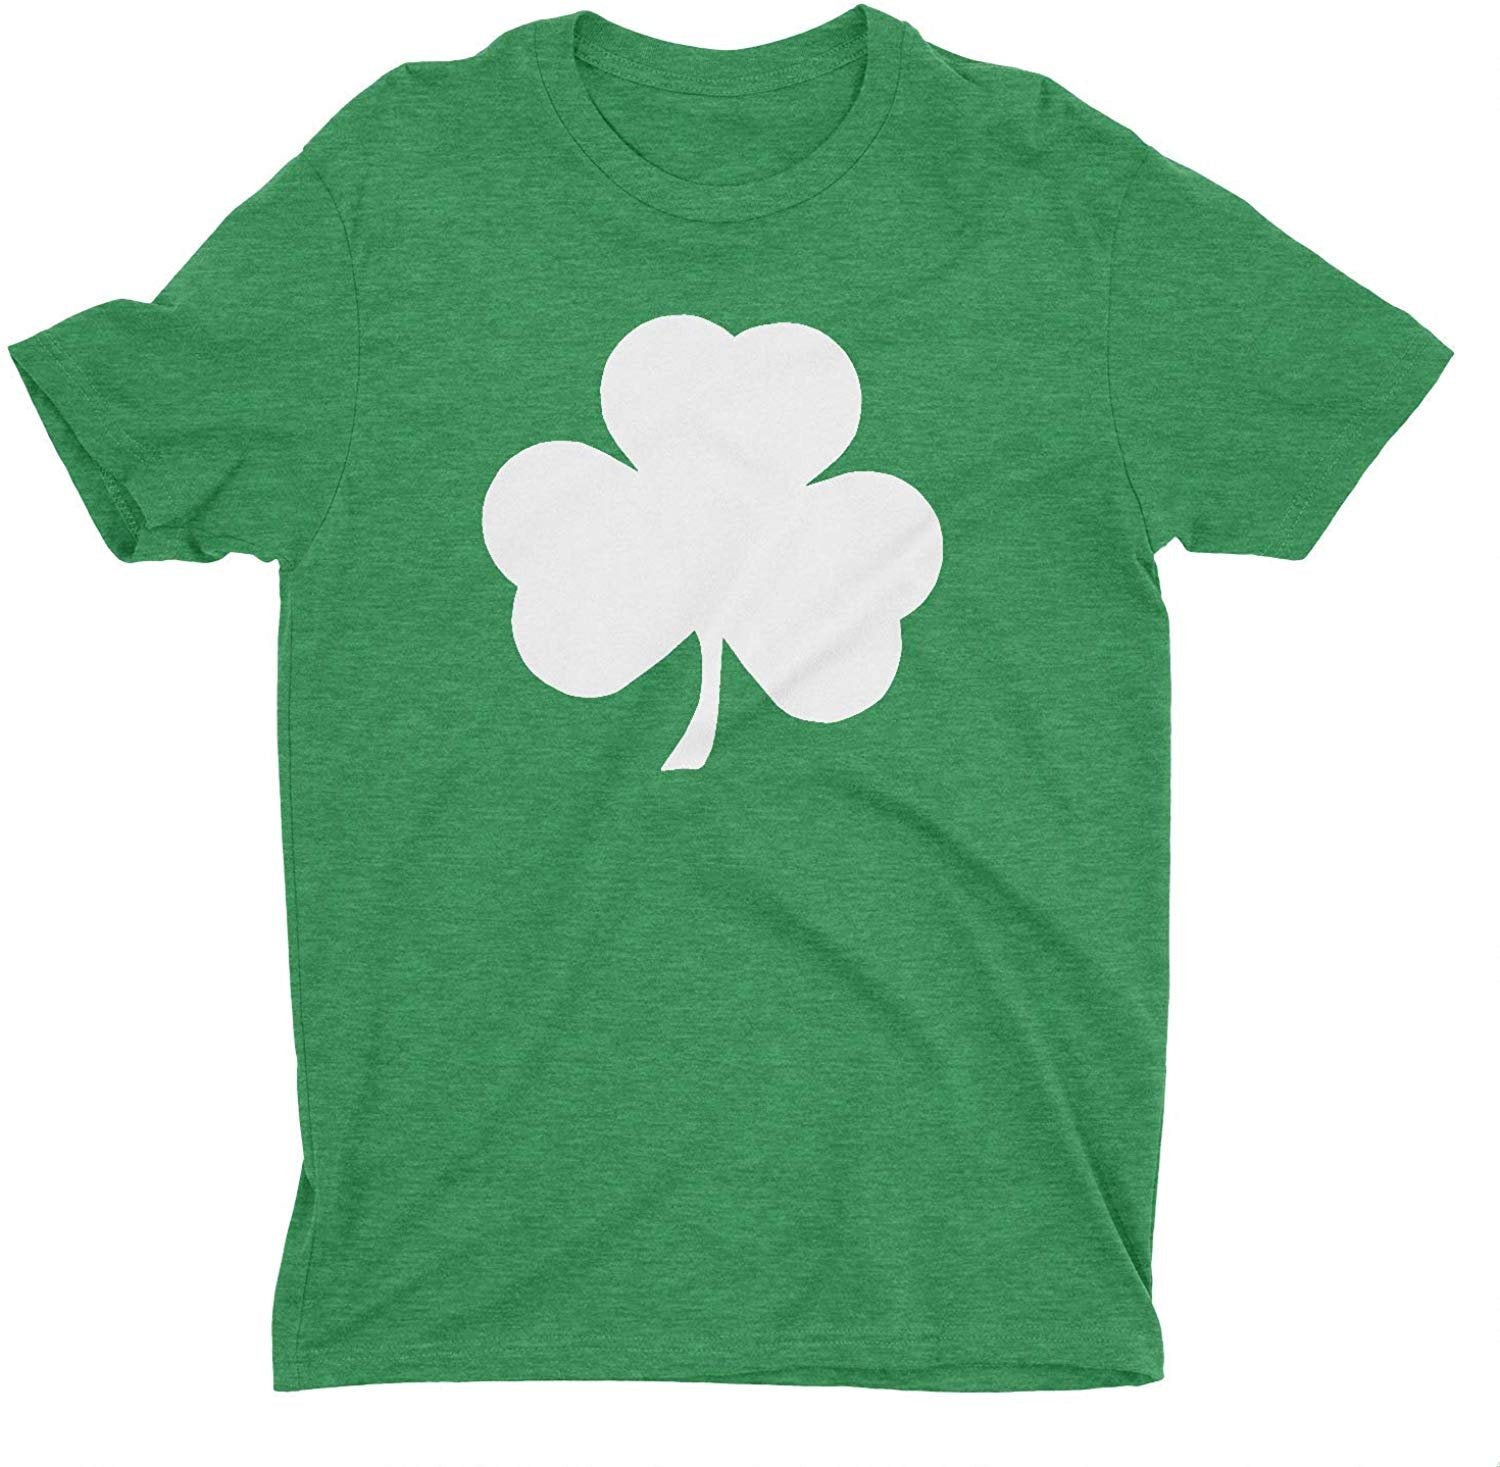 T-shirt pour homme Shamrock vert chiné (grand design solide, vert chiné)